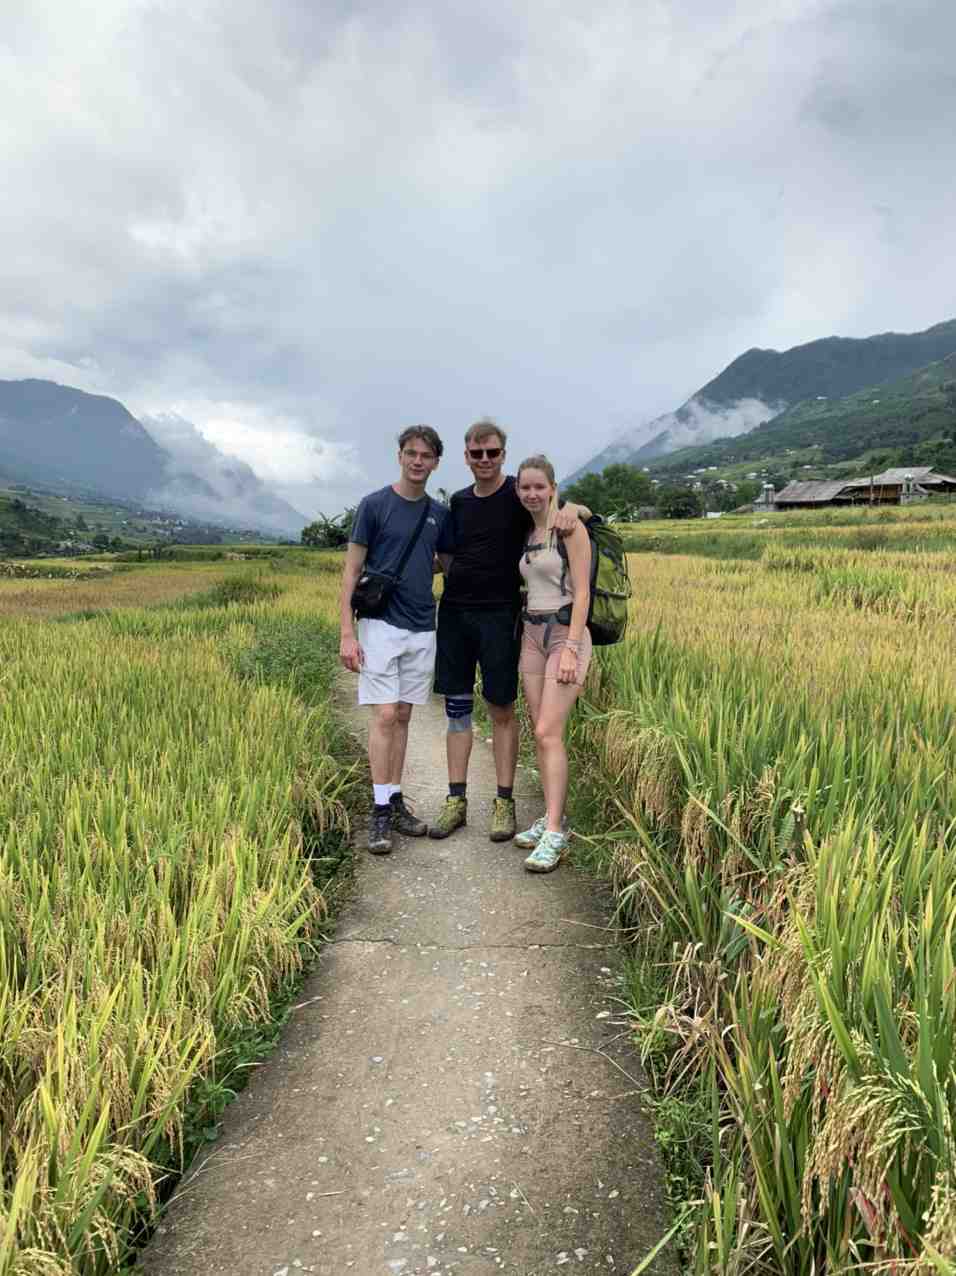 Walking in terrace rice fields in Sapa